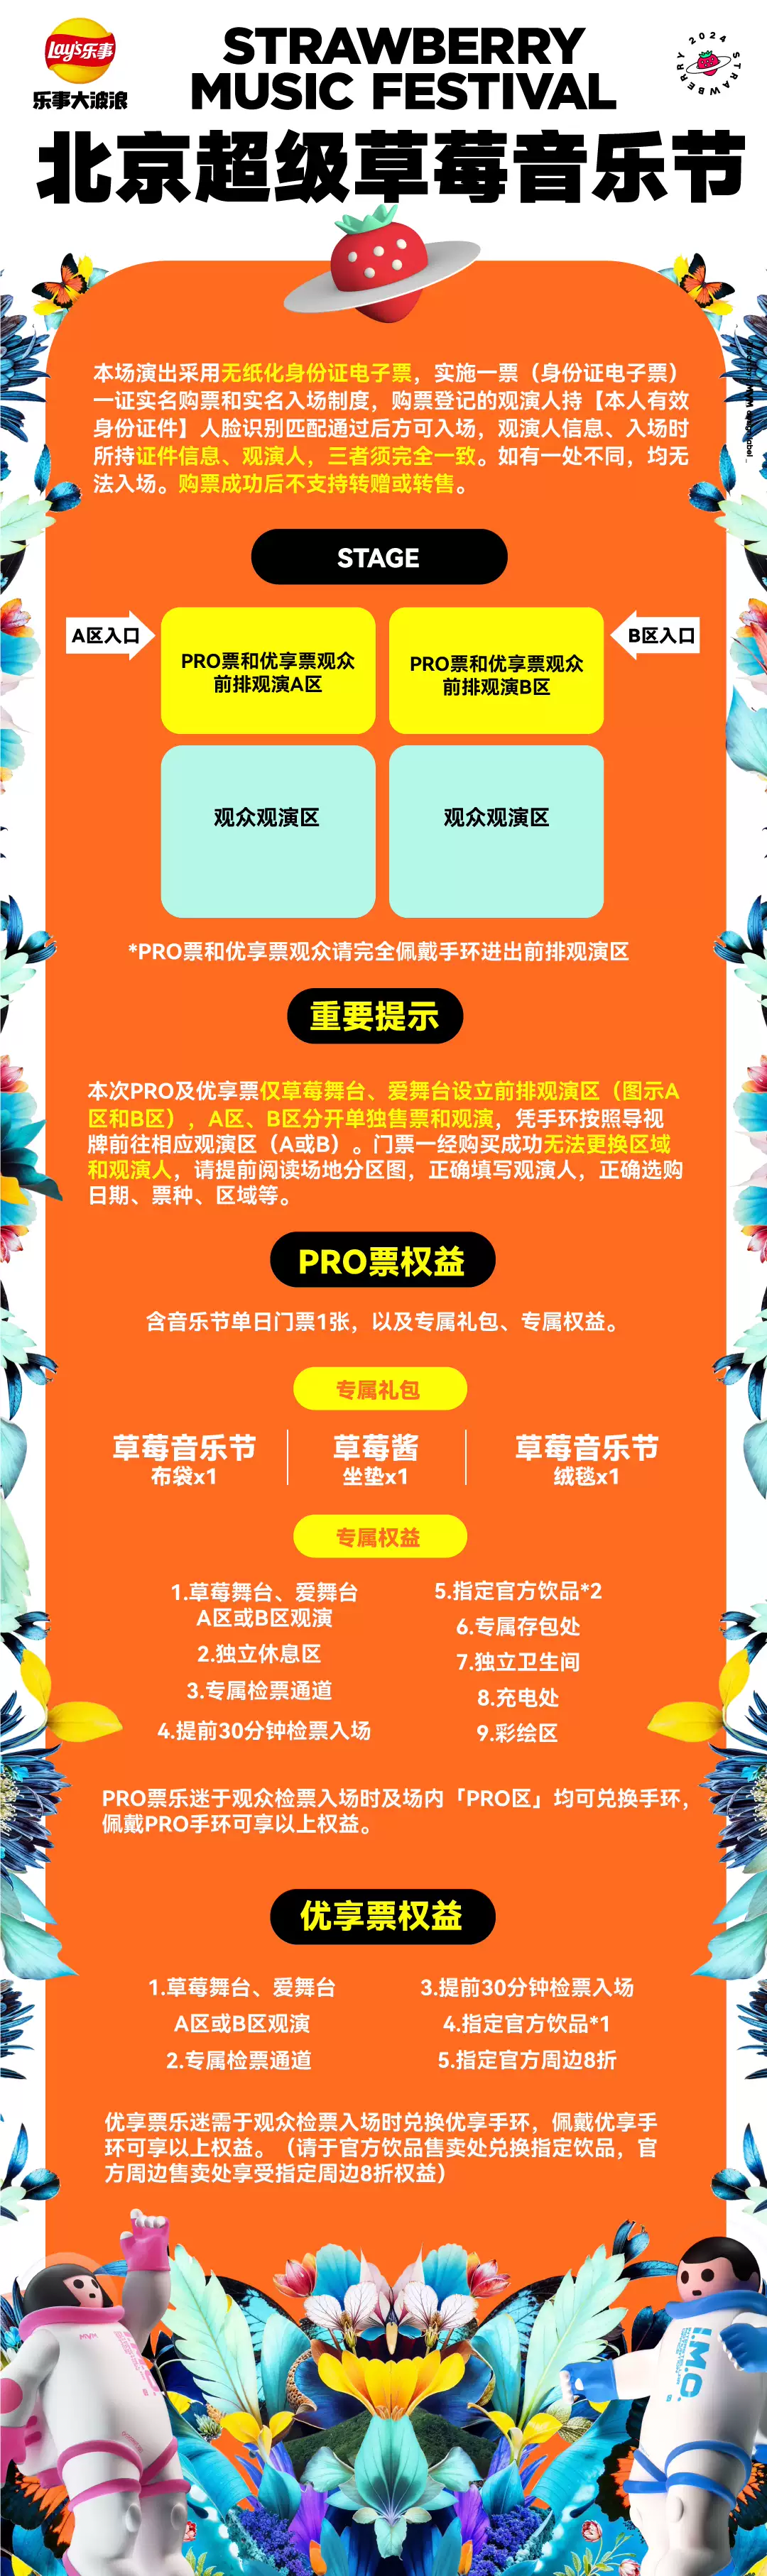 北京草莓音乐节门票权益